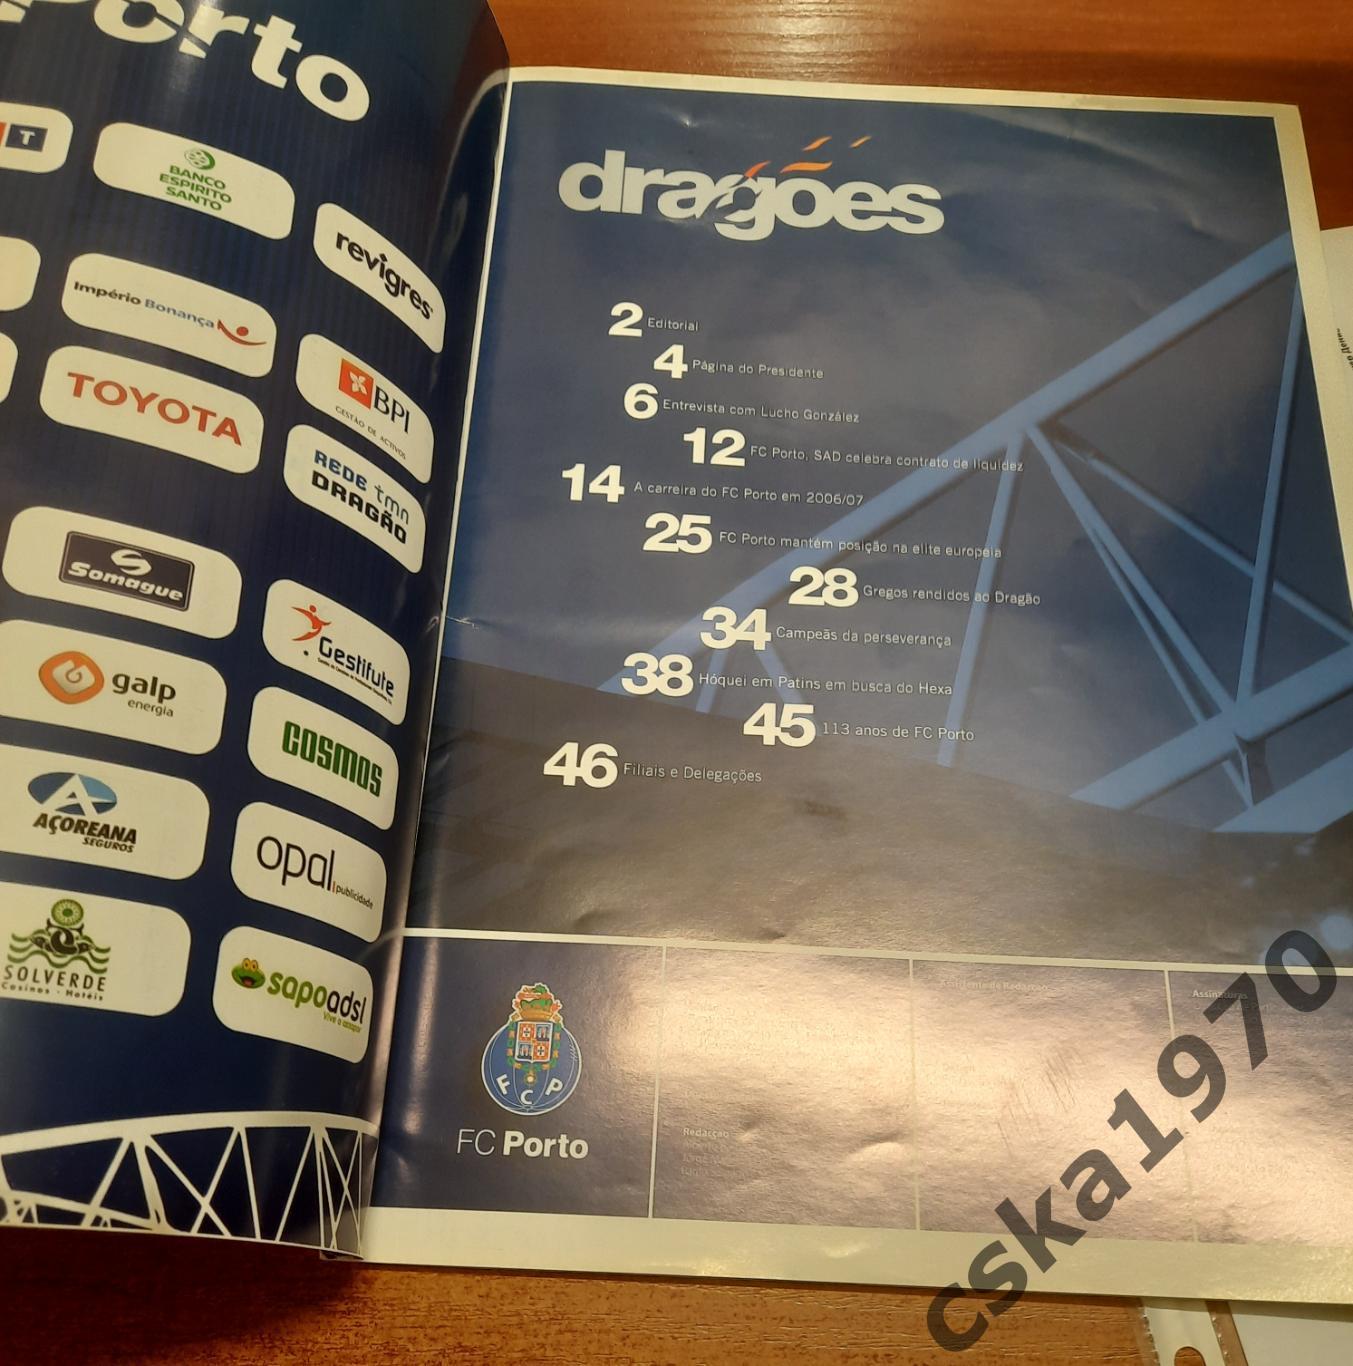 Порто Португалия - ЦСКА 2006 - официальный журнал DRAGOES (сентябрь 2006) 1